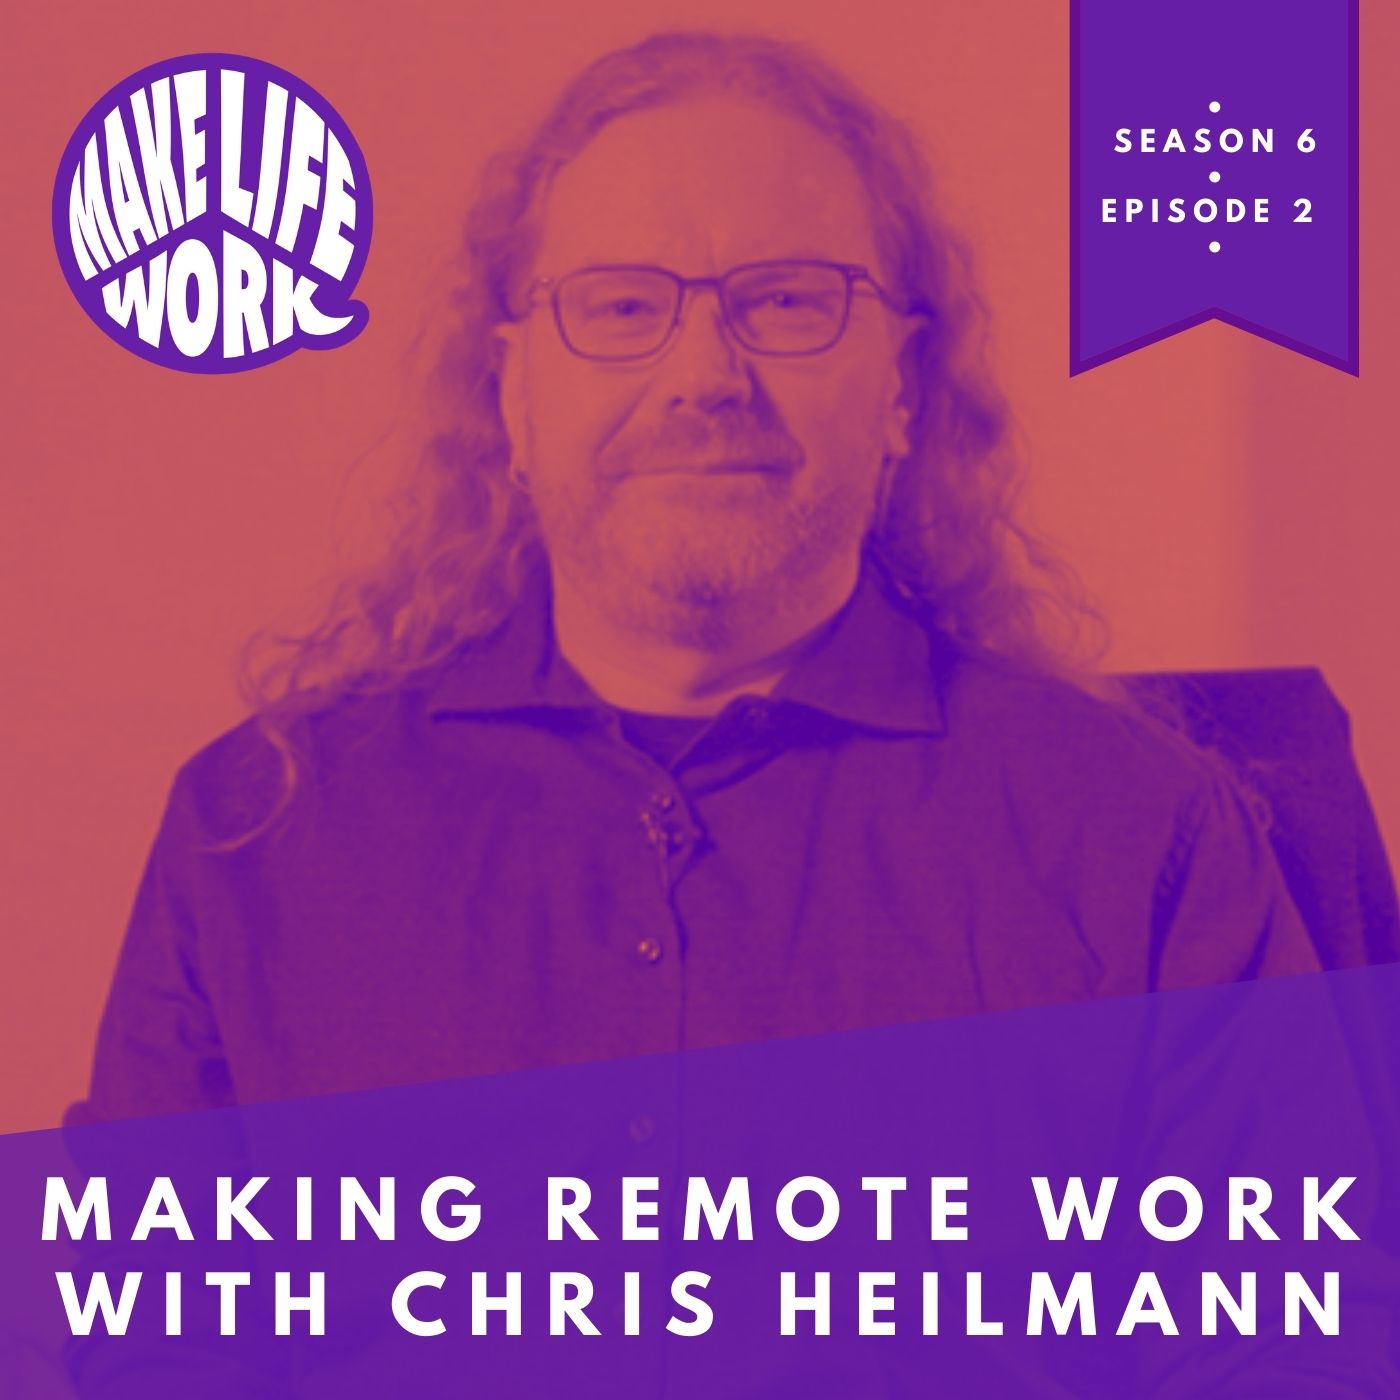 Making remote work with Chris Heilmann